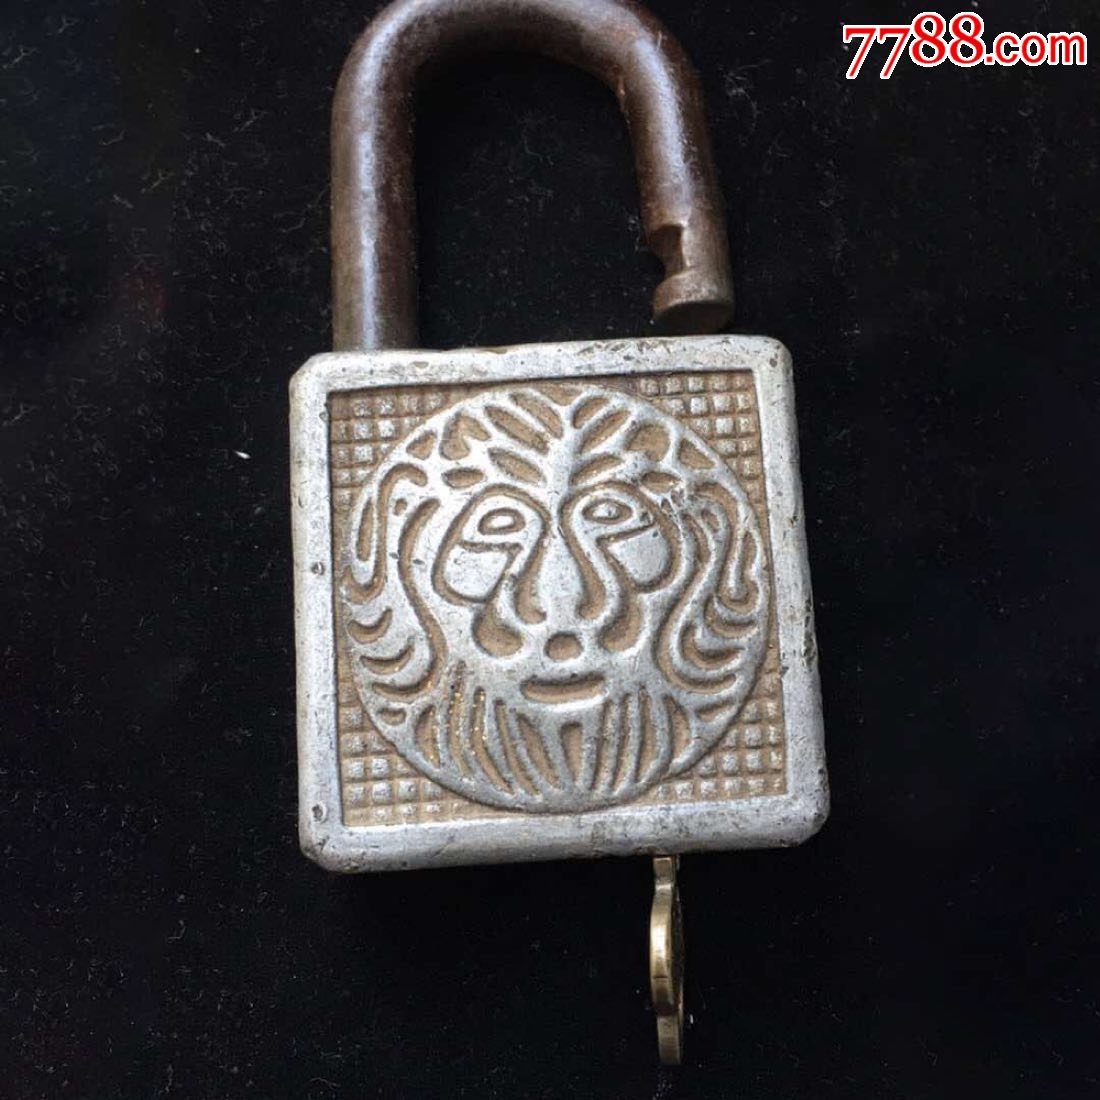 狮子图案浮雕大锁,材质特殊,送两把锁